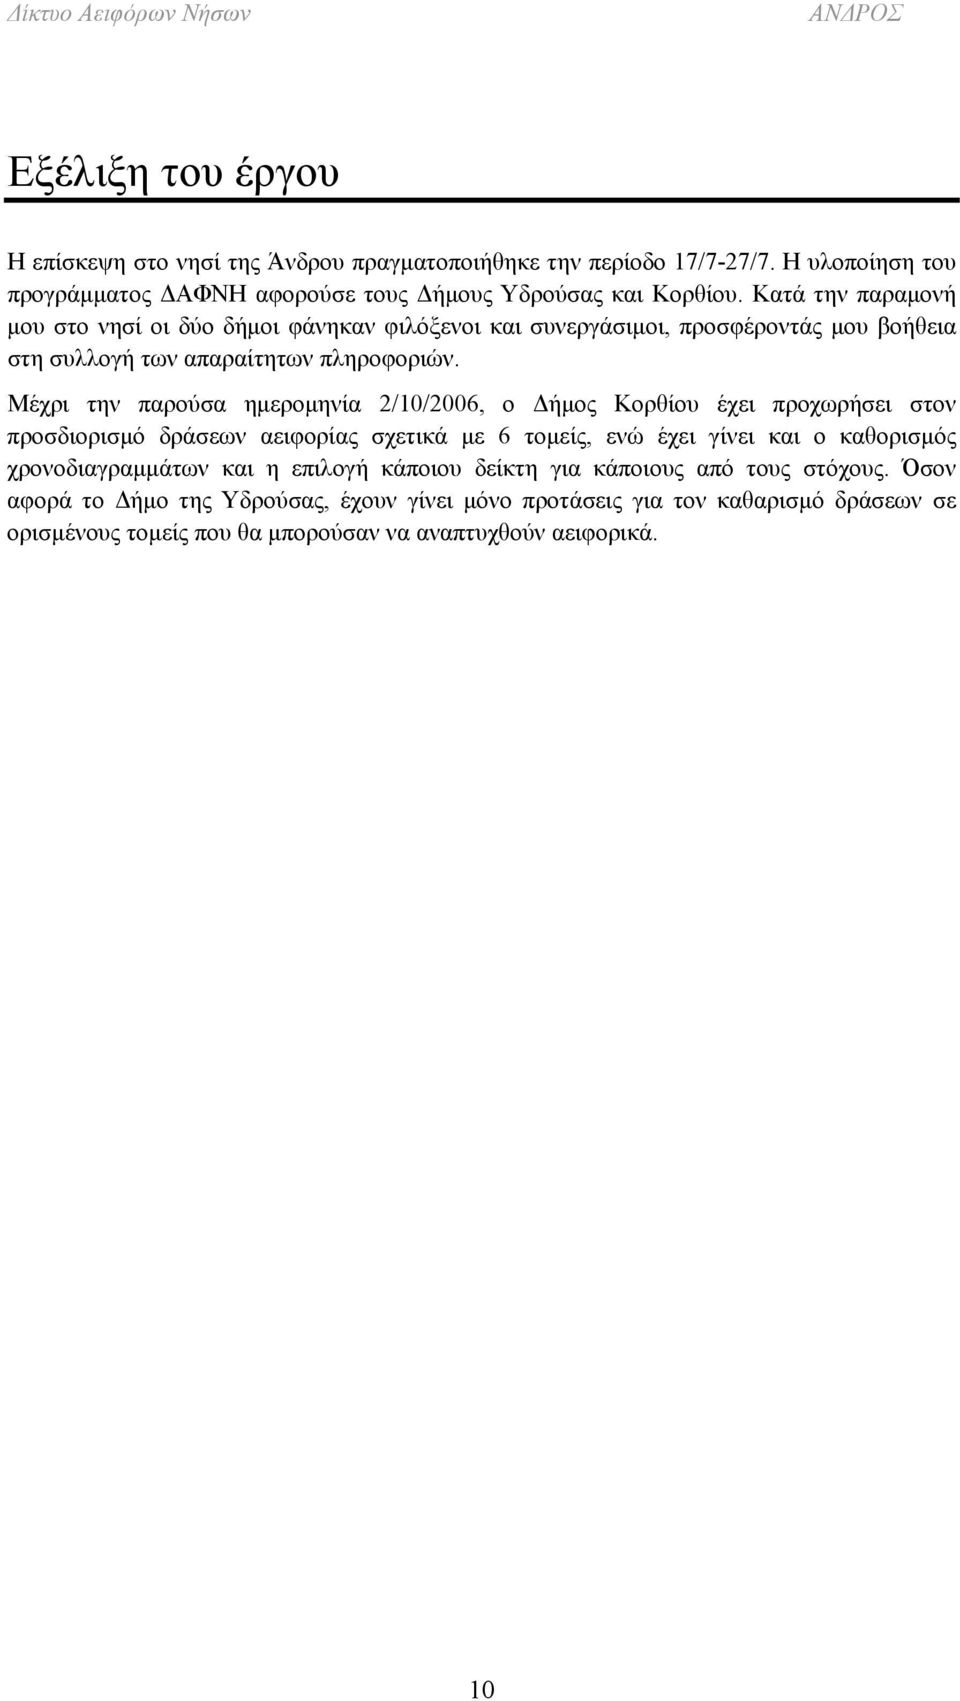 Μέχρι την παρούσα ημερομηνία 2/10/2006, ο Δήμος Κορθίου έχει προχωρήσει στον προσδιορισμό δράσεων αειφορίας σχετικά με 6 τομείς, ενώ έχει γίνει και ο καθορισμός